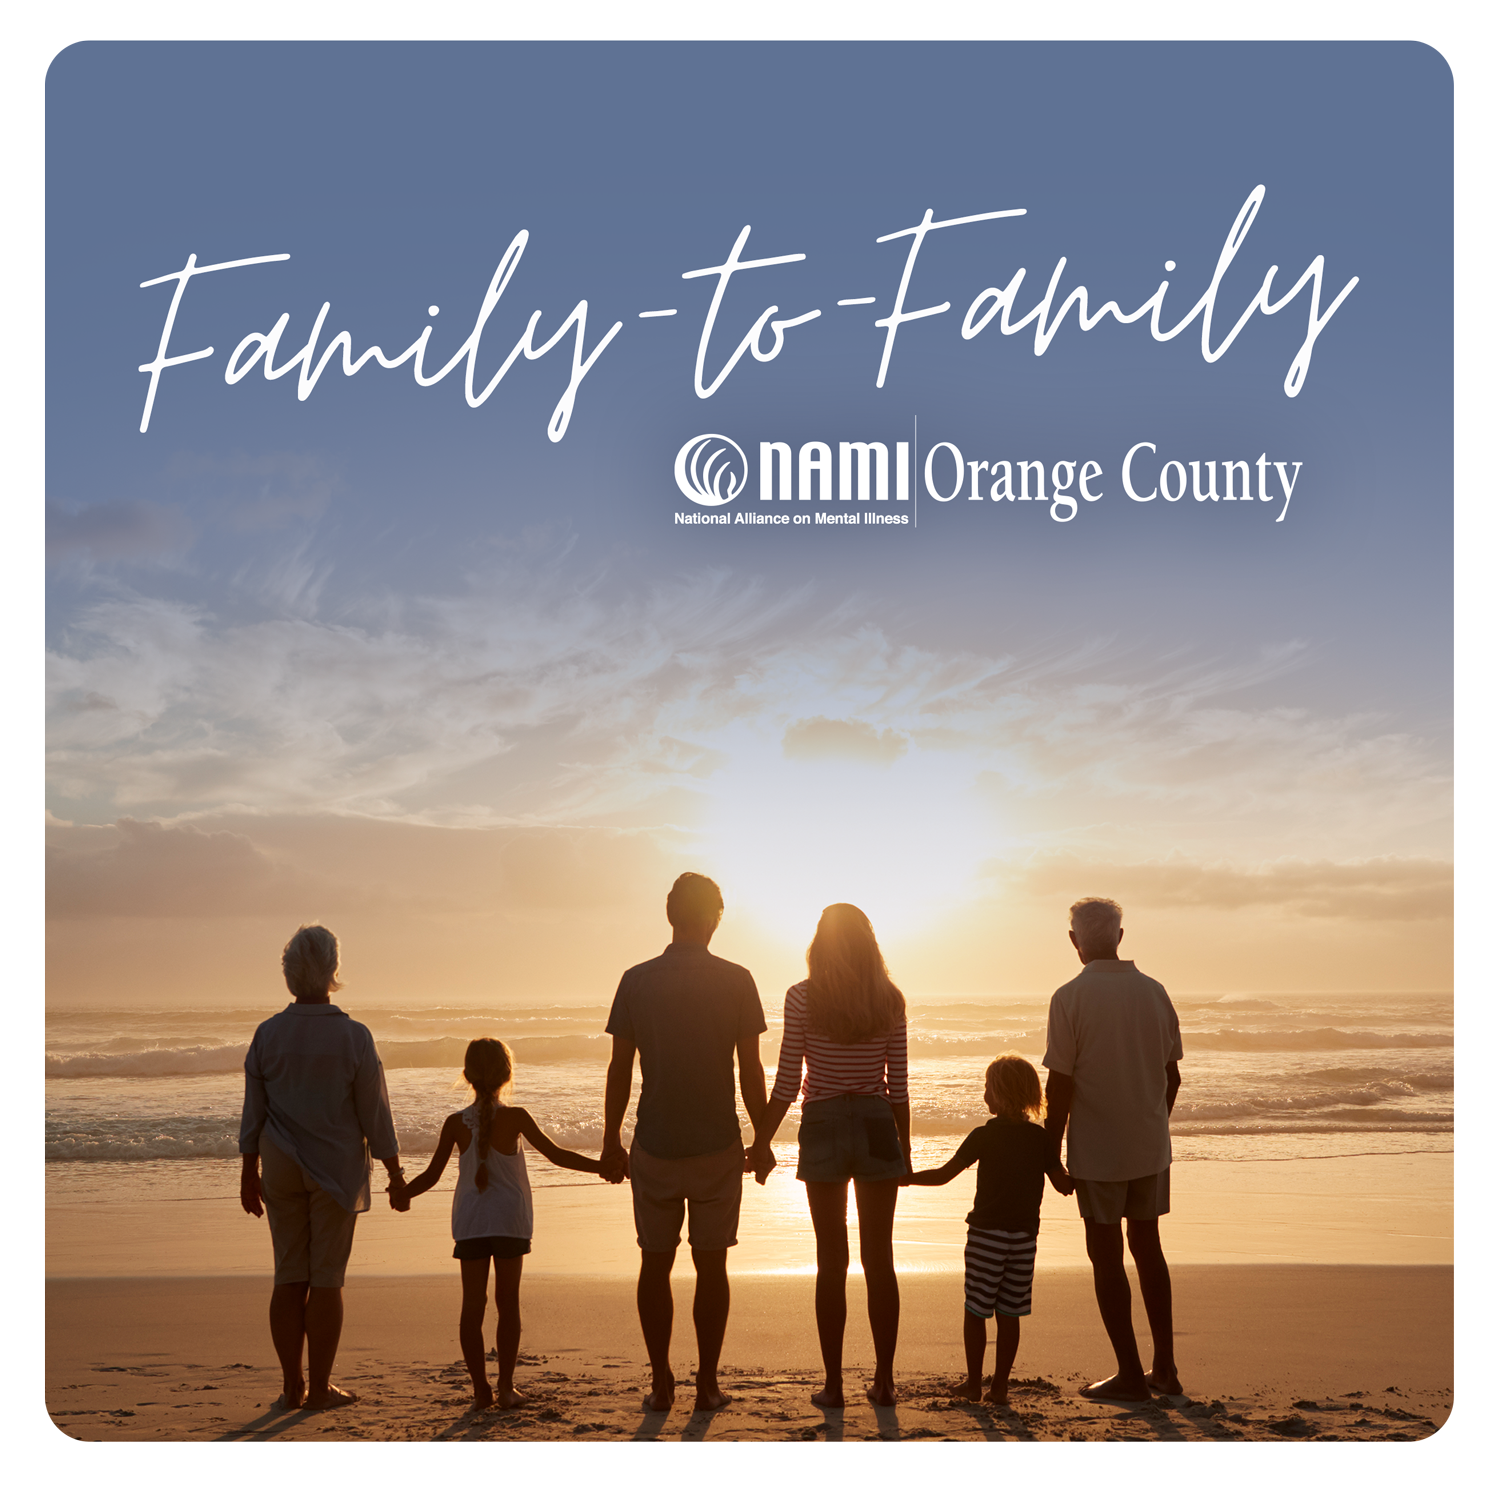 ProgramaHdr_Familia a Familia.png